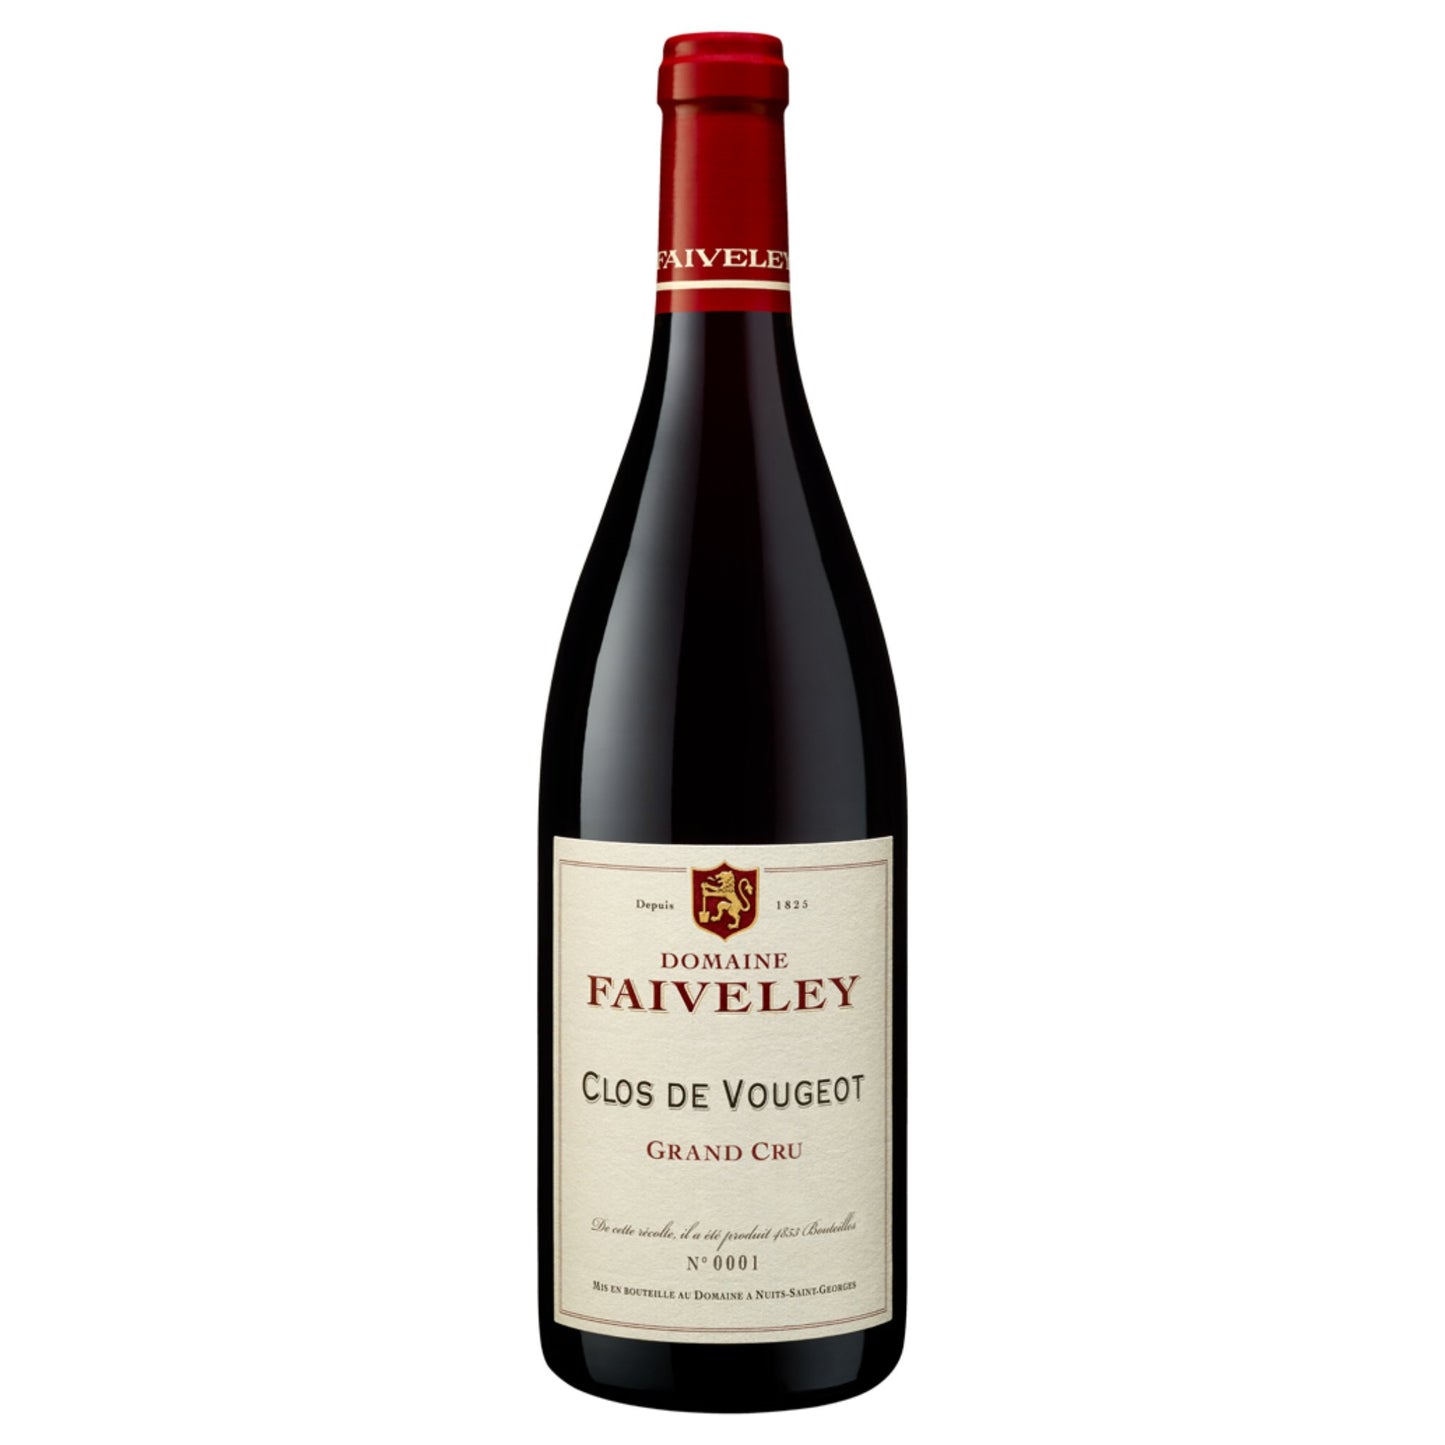 Faiveley Clos de Vougeot Grand Cru - Grand Vin Pte Ltd